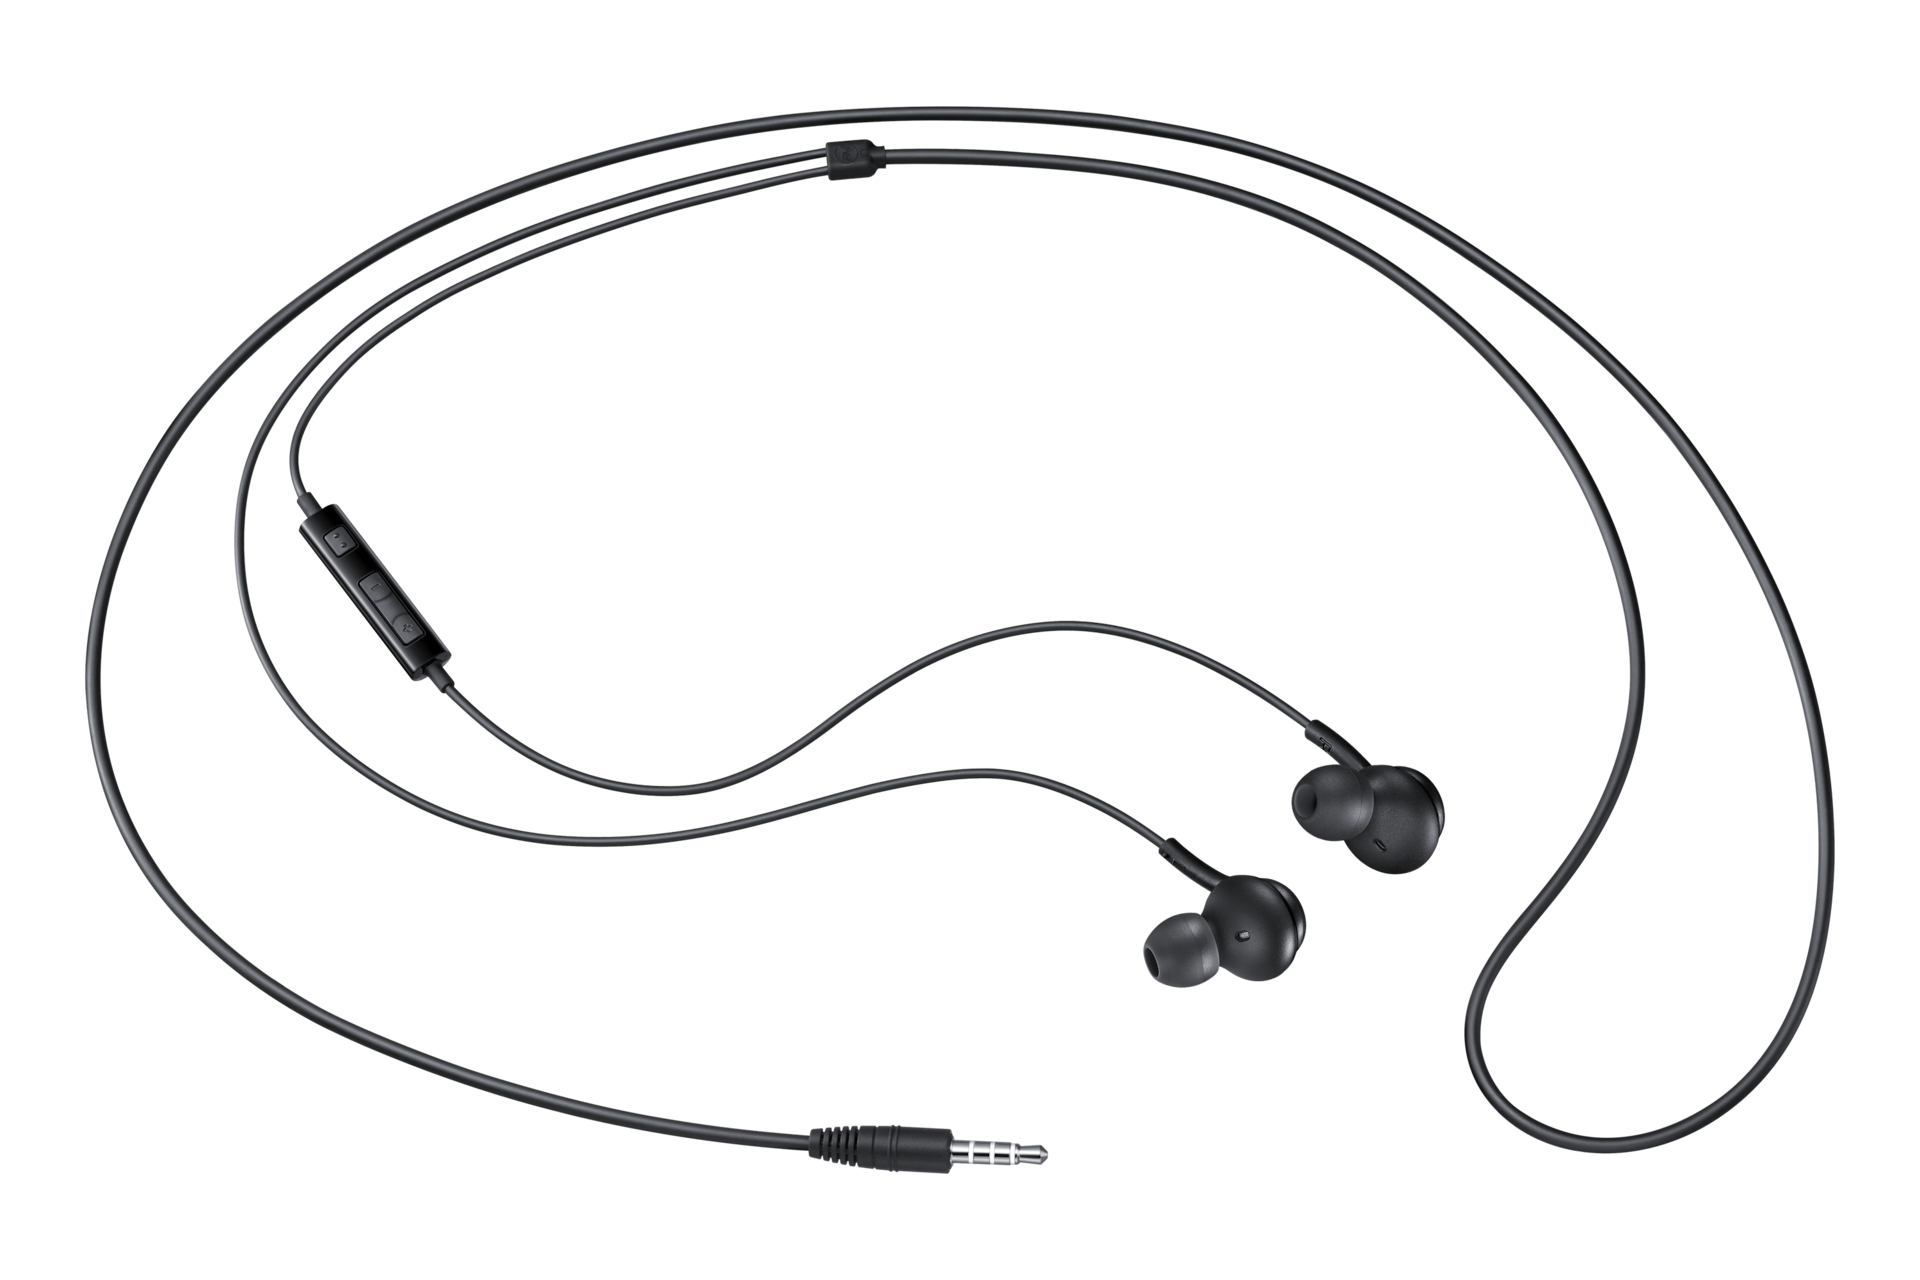 Auriculares con Cable SAMSUNG Eo-Ia500 (In Ear - Micrófono - Negro)